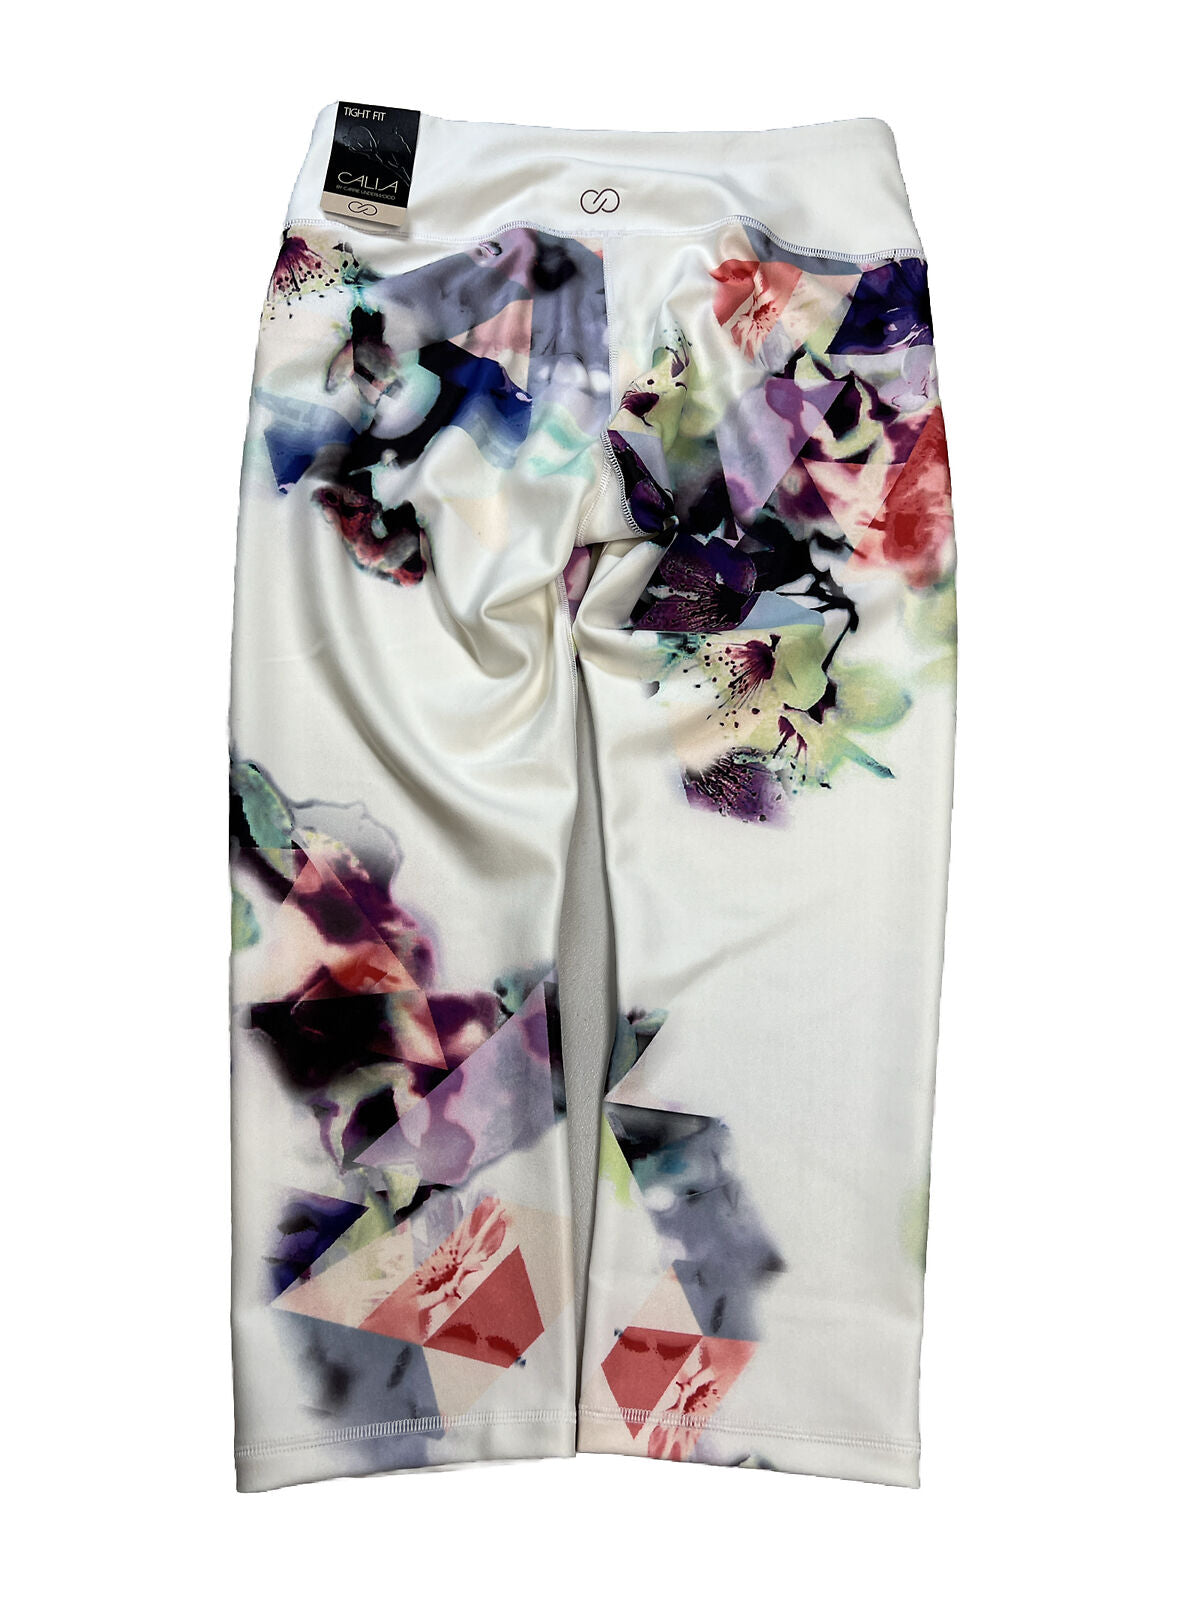 NUEVOS leggings deportivos cortos florales blancos Calia para mujer - M